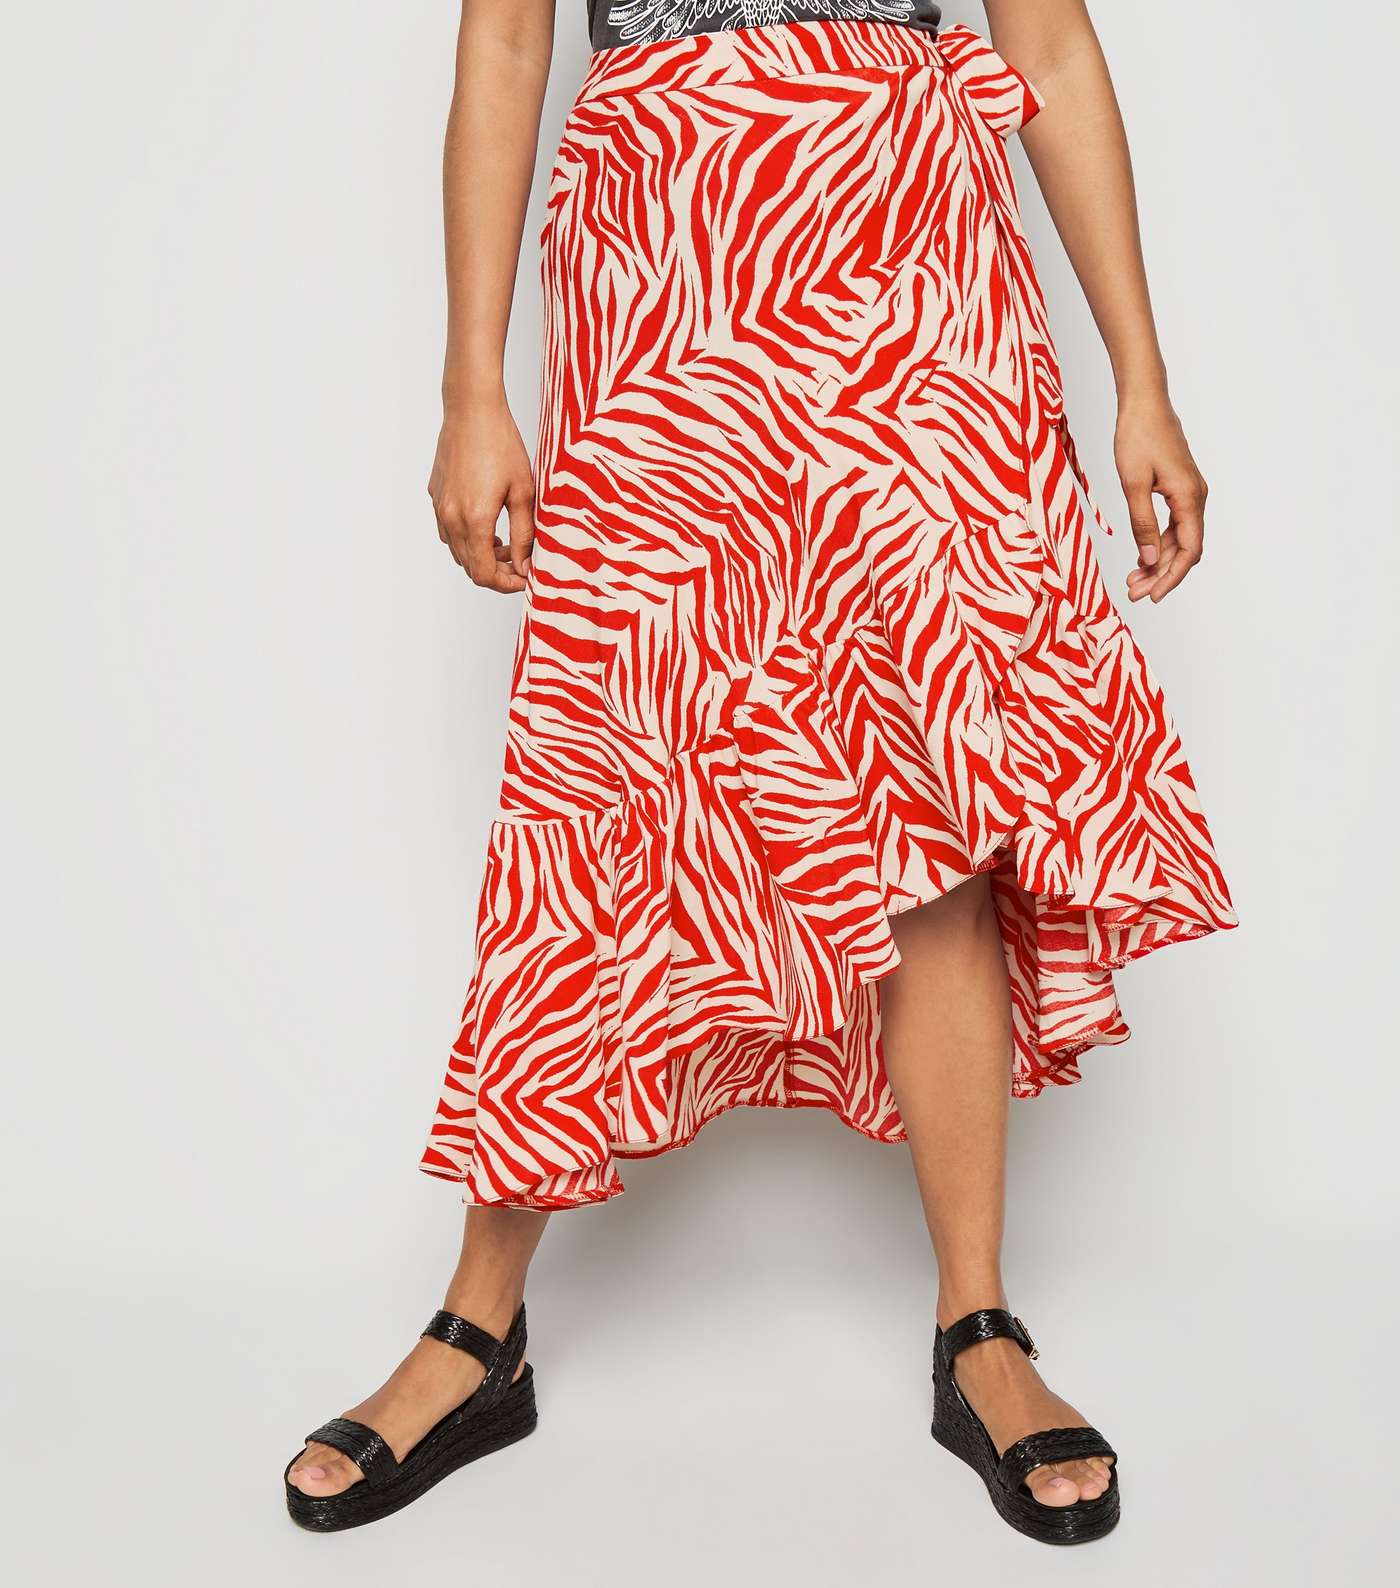 Petite Red Zebra Print Ruffle Midi Skirt Image 2